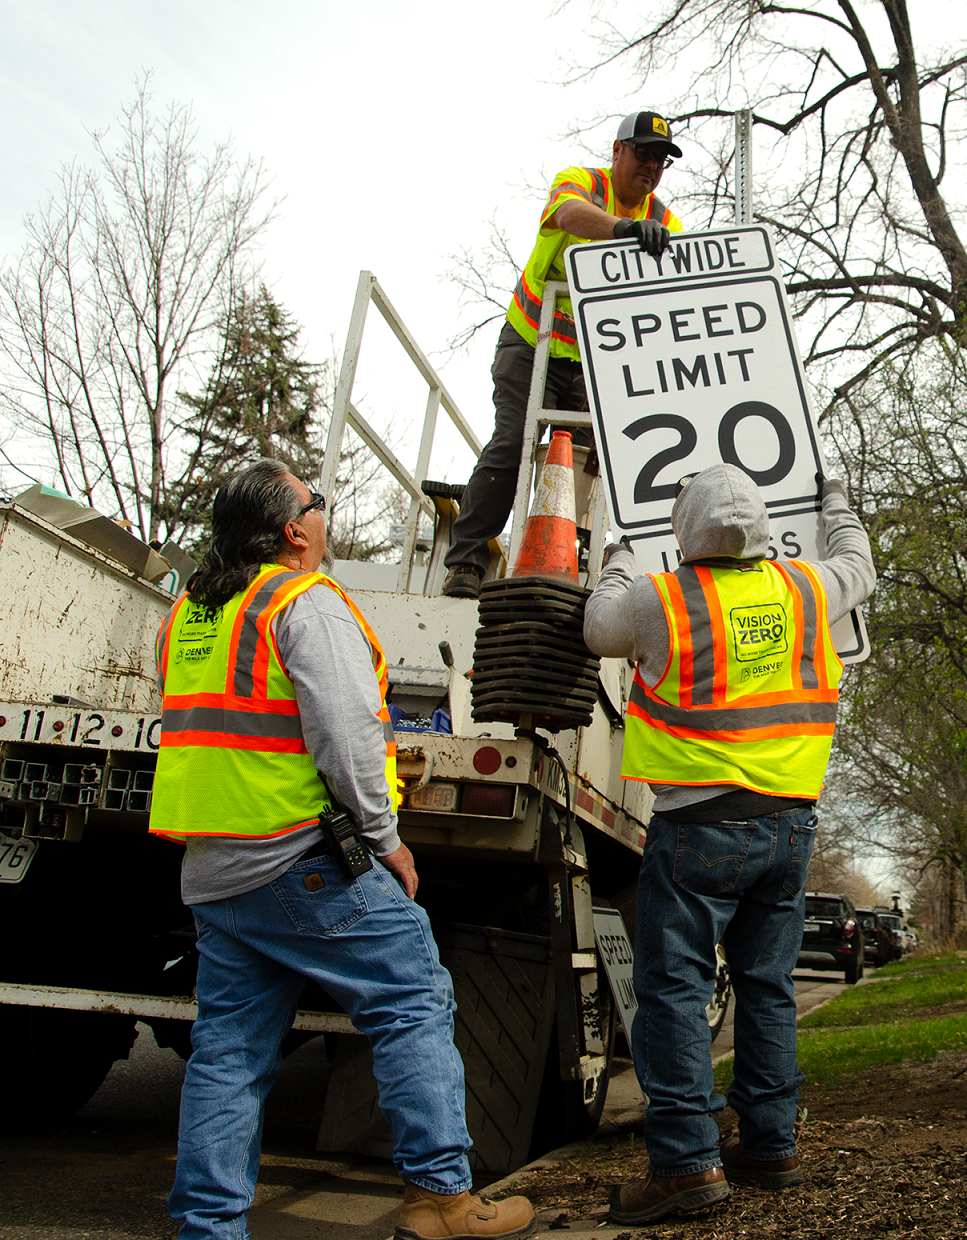 Miles de nuevas señales de límite de velocidad se instalarán en toda la ciudad de Denver